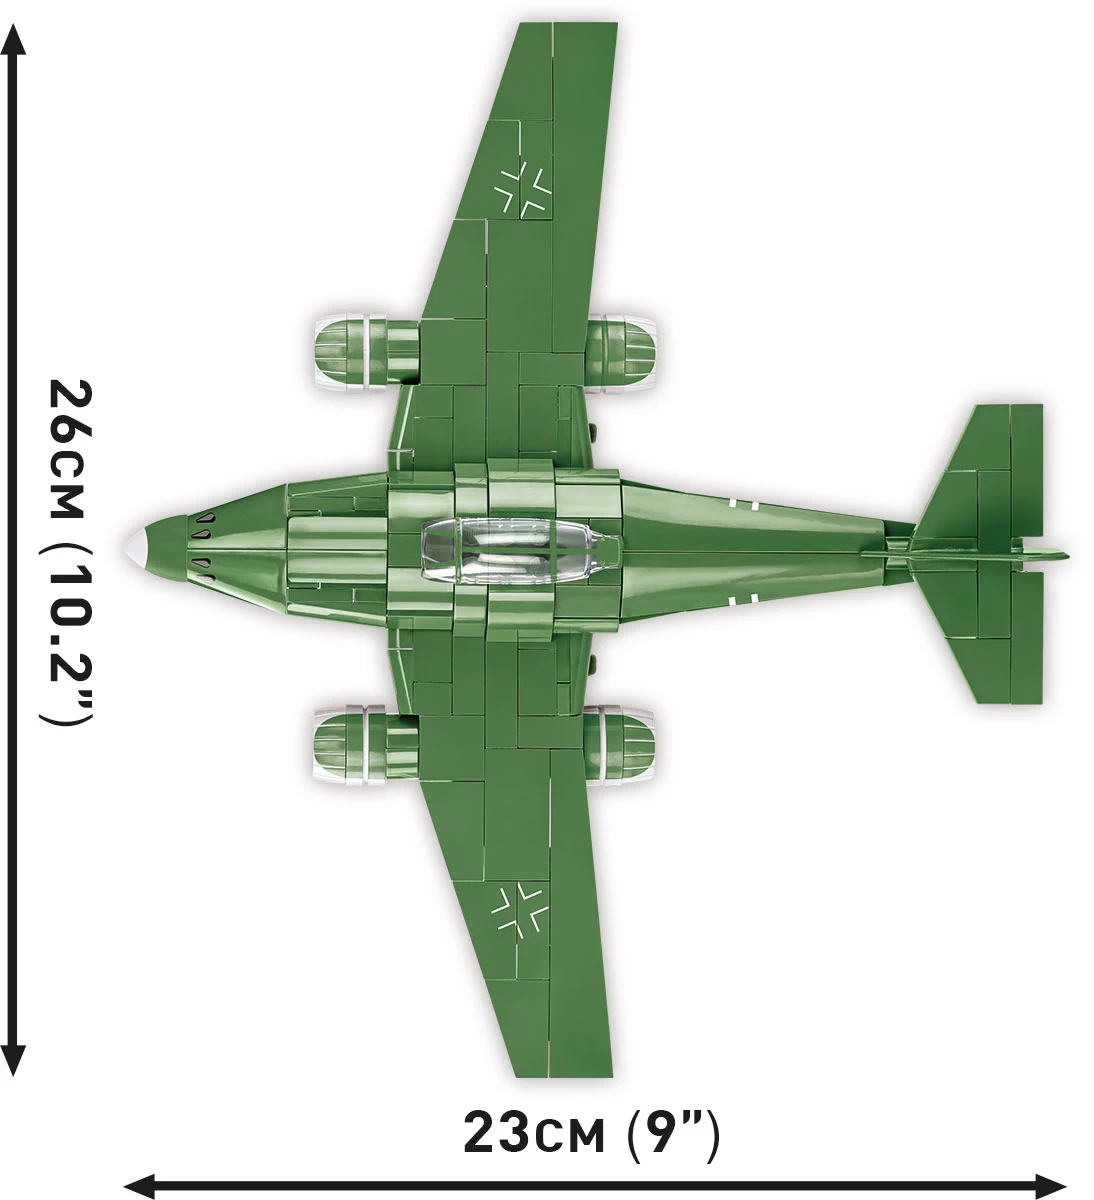 COBI - Messerschmitt ME 262 (5881)